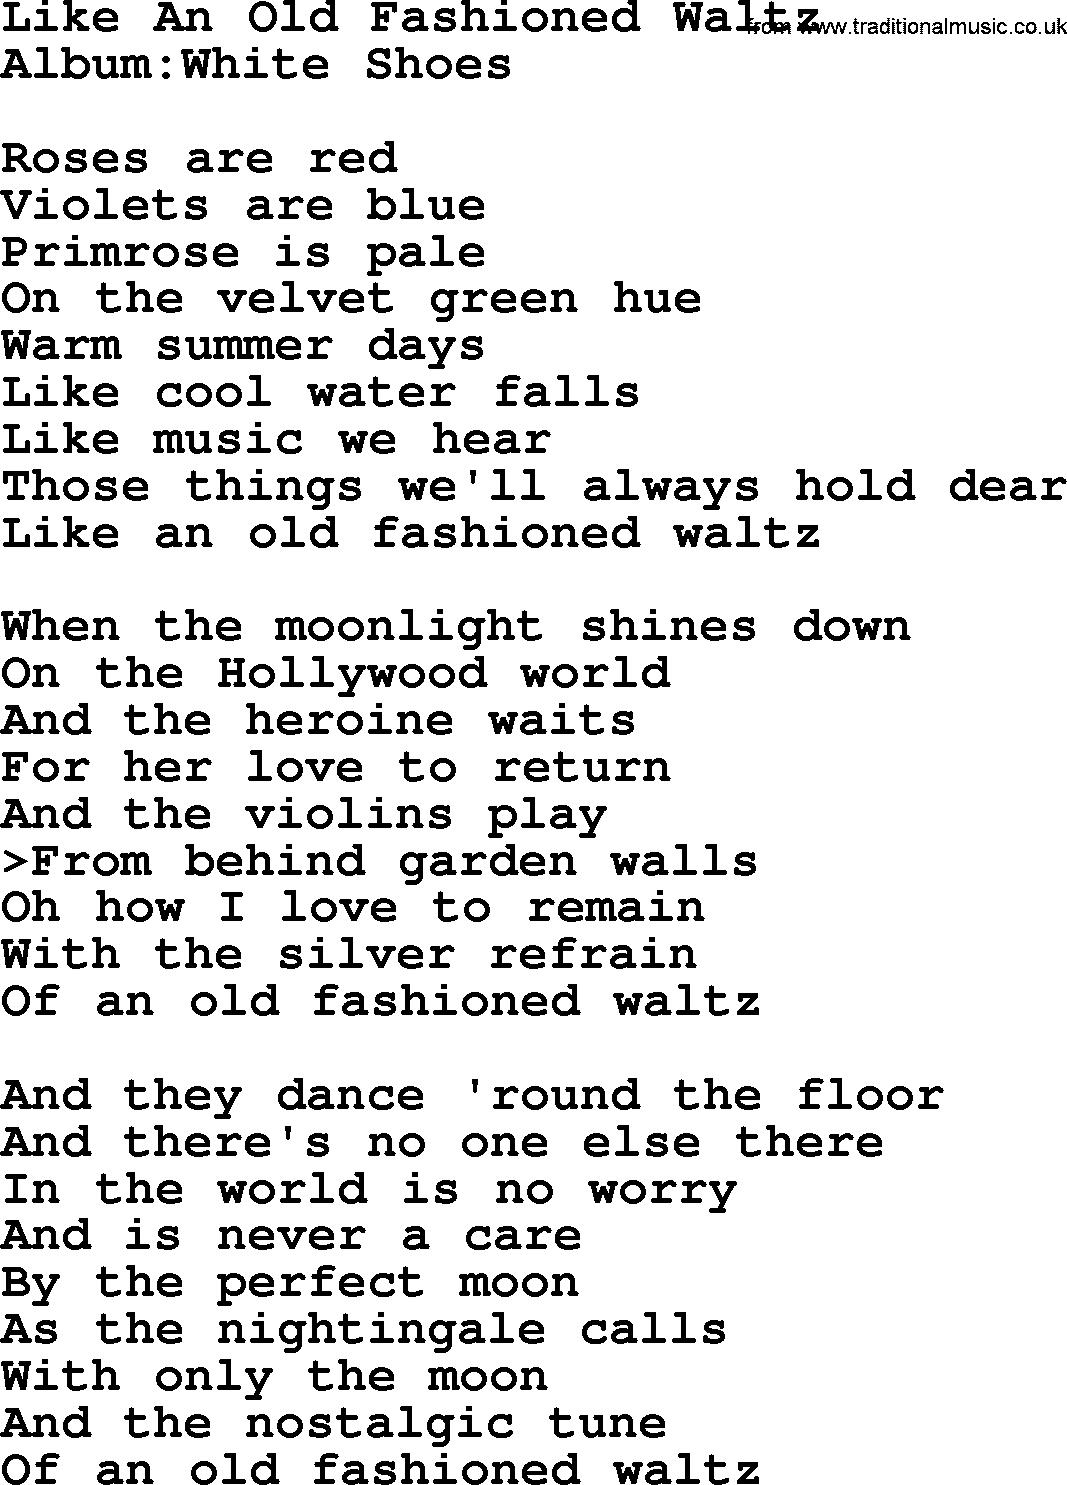 Emmylou Harris song: Like An Old Fashioned Waltz lyrics